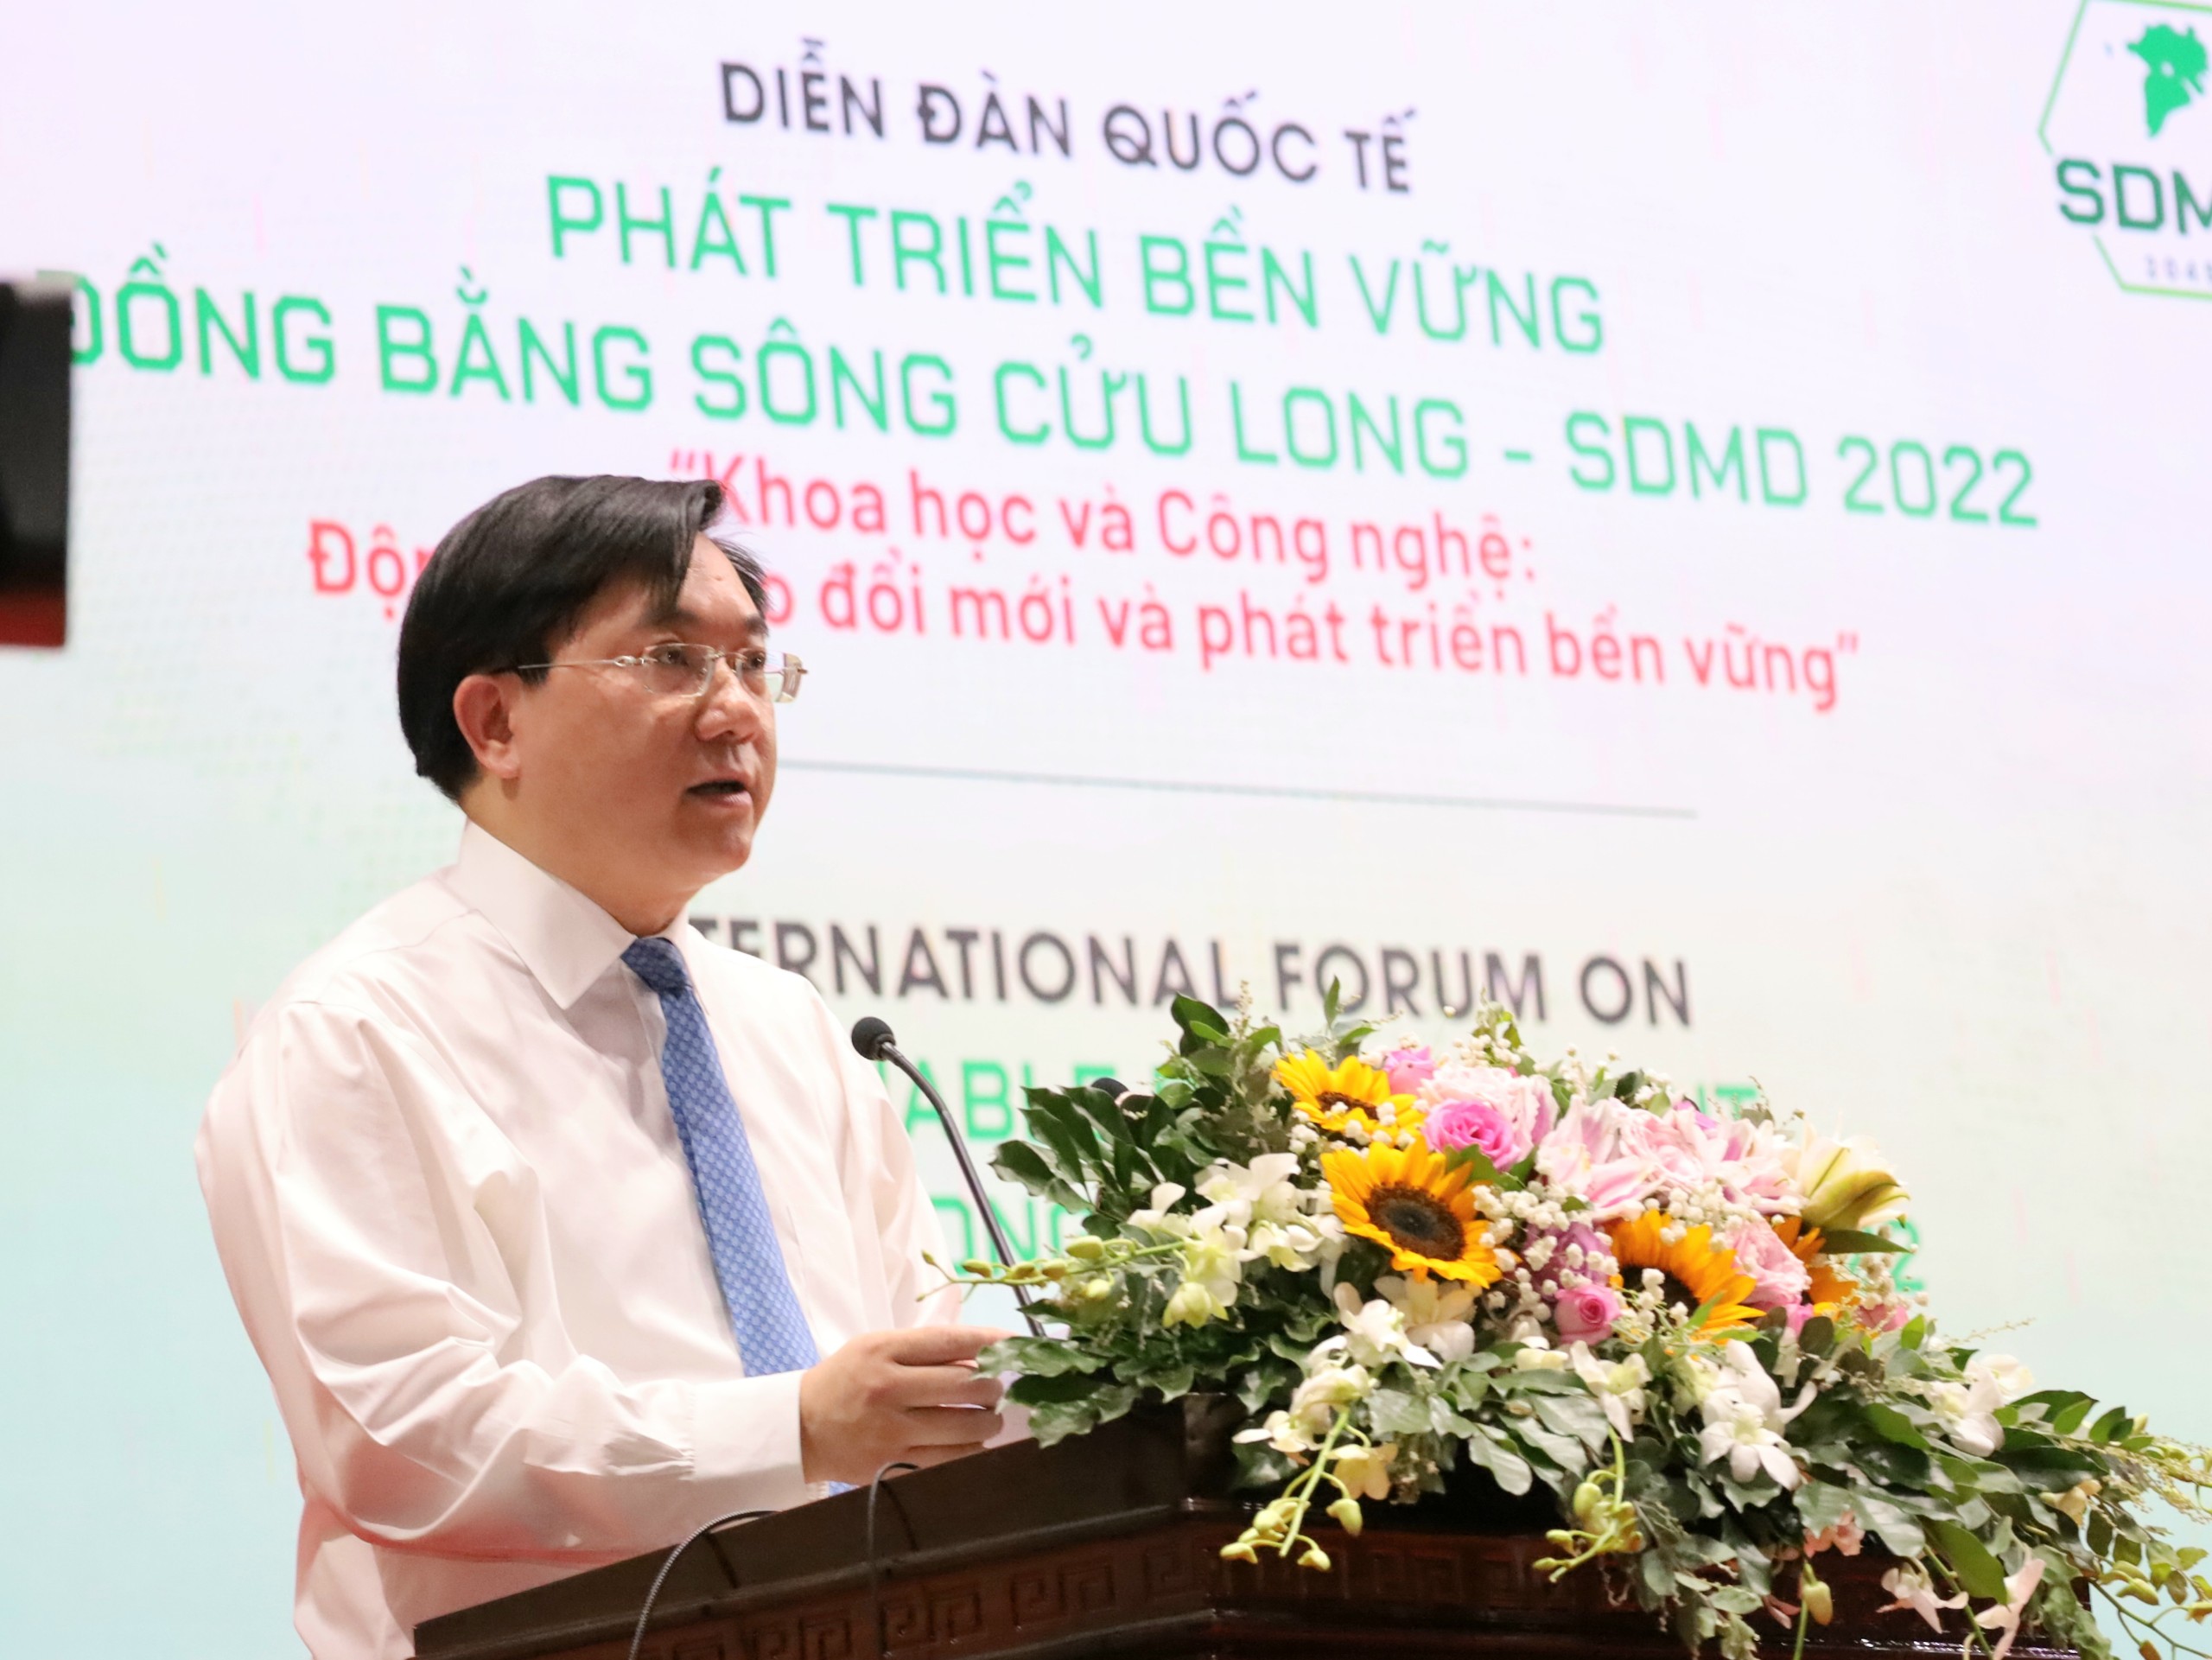 Ông Trần Duy Đông – Thứ tưởng Bộ Kế hoạch và Đầu tư thay mặt Chính phủ phát biểu chỉ đạo tại diễn đàn.